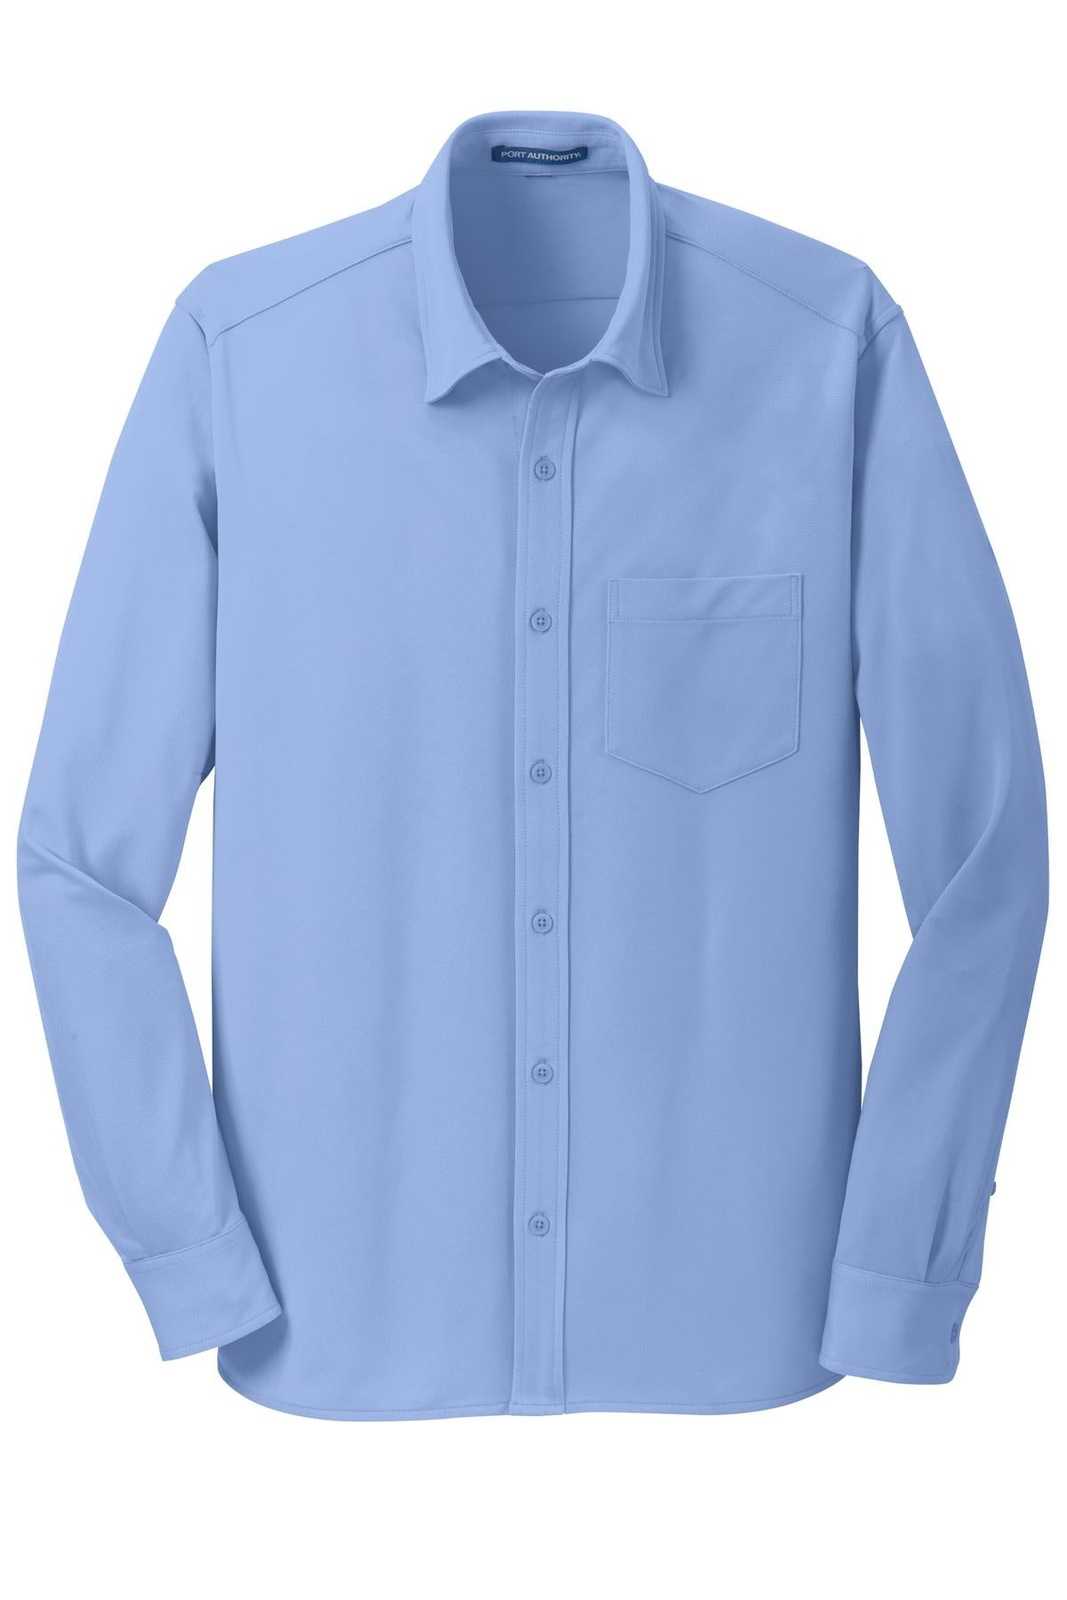 Port Authority K570 Dimension Knit Dress Shirt - Dress Shirt Blue - HIT a Double - 5